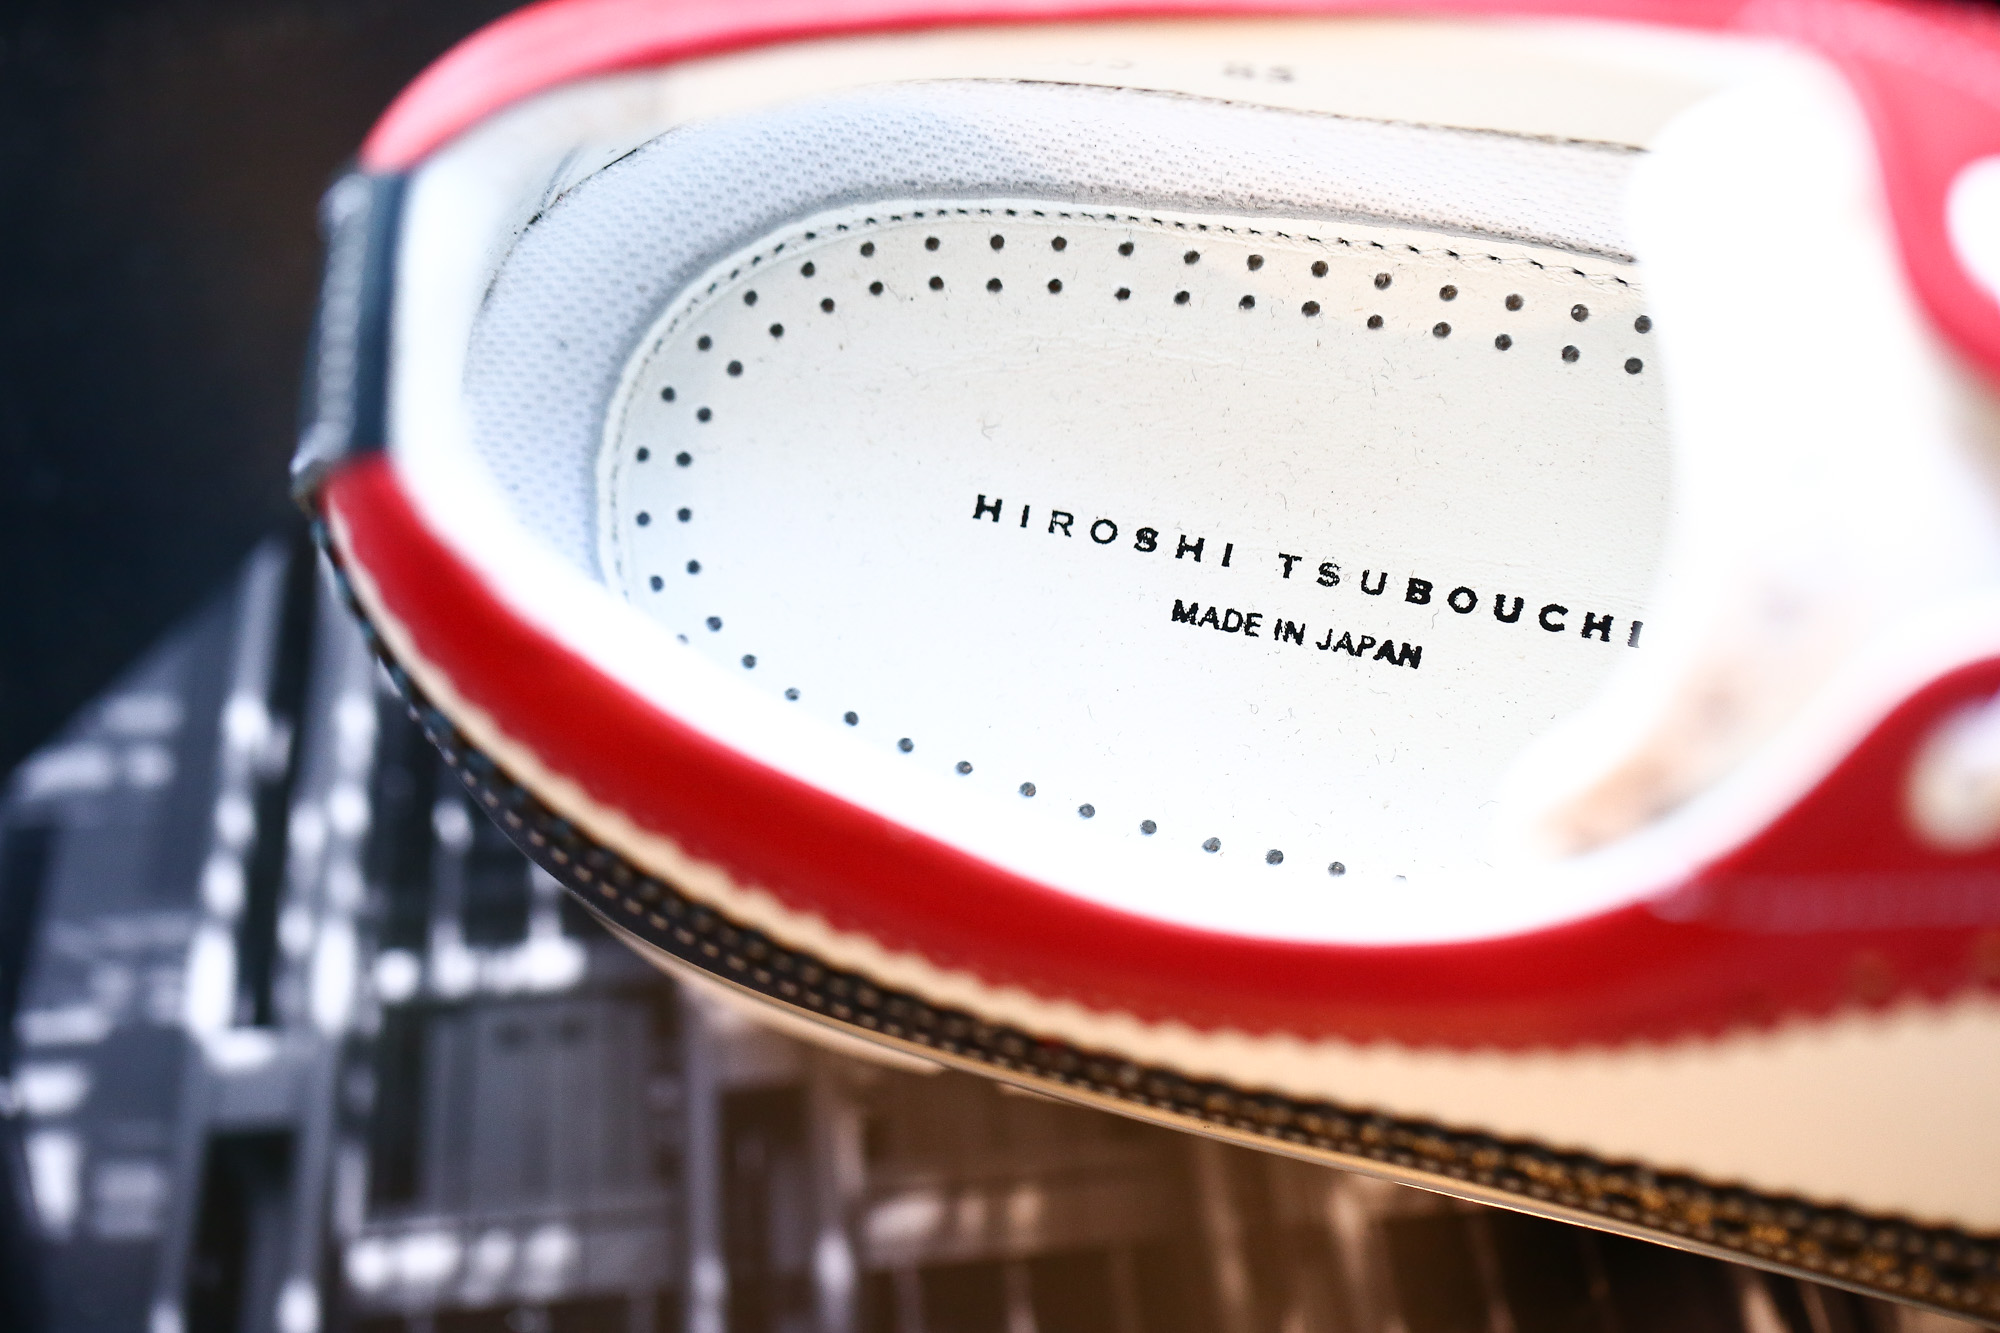 【HIROSHI TSUBOUCHI // ヒロシツボウチ】 HTO-AD05 Wingtip Sneakers トリコロールカラー Calf Leather カーフレザー ウィングチップ スニーカー NAVY / WHITE / RED (ネイビー / ホワイト / レッド・NV/WH/RE) Made in Japan (日本製) 2017 秋冬 【Re Arrival / 再入荷】 hiroshitsubouchi ヒロシツボウチ 木梨則武 ノリさん C.ロナウド クリスティアーノロナウド トリコカラー とんねるずのみなさんのおかげでした トリコロール